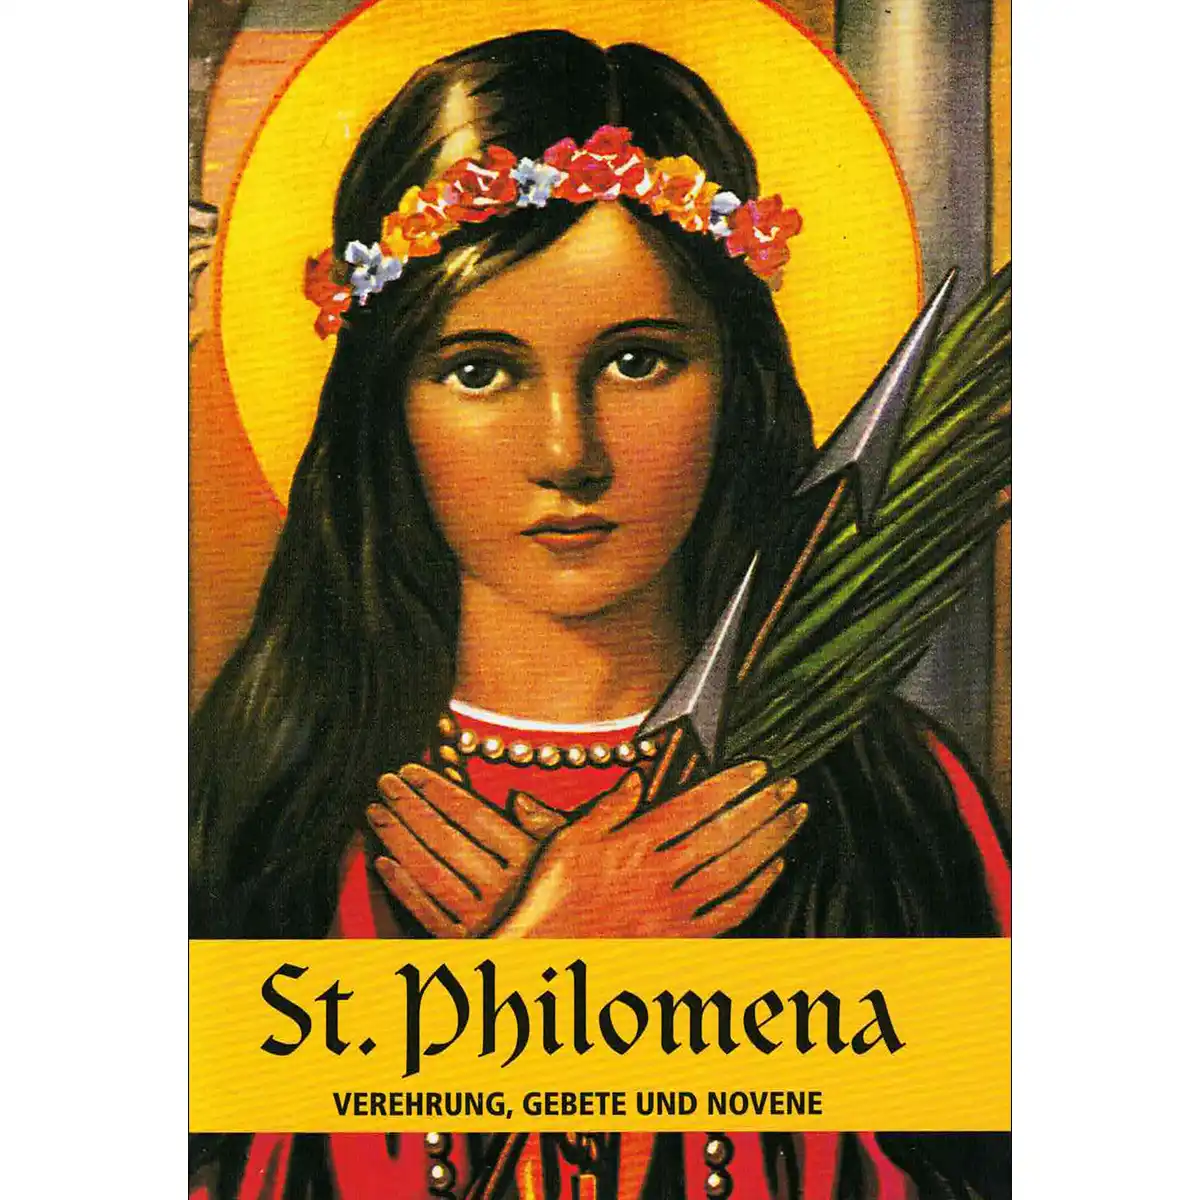 St. Philomena – Verehrung, Gebete und Novene